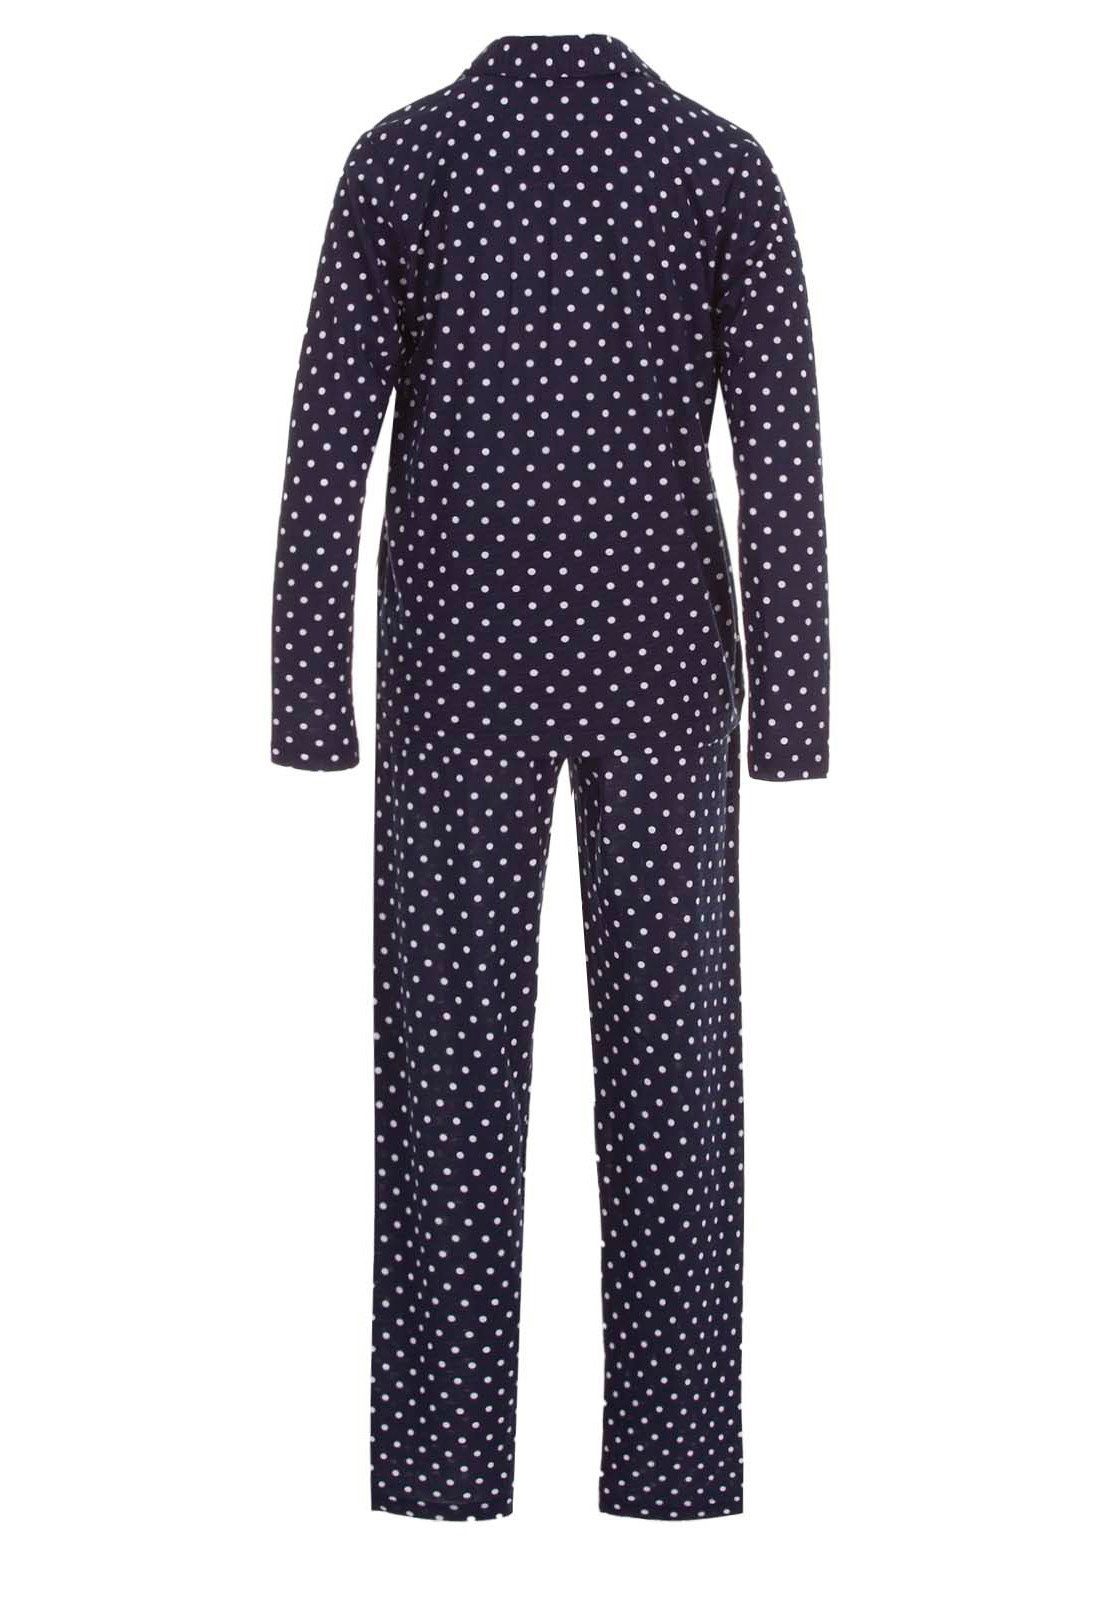 zeitlos Schlafanzug »zeitlos Pyjama Set Damen Punkte Streifen S-2XL  2-Teilig Schlafanzug« online kaufen | OTTO